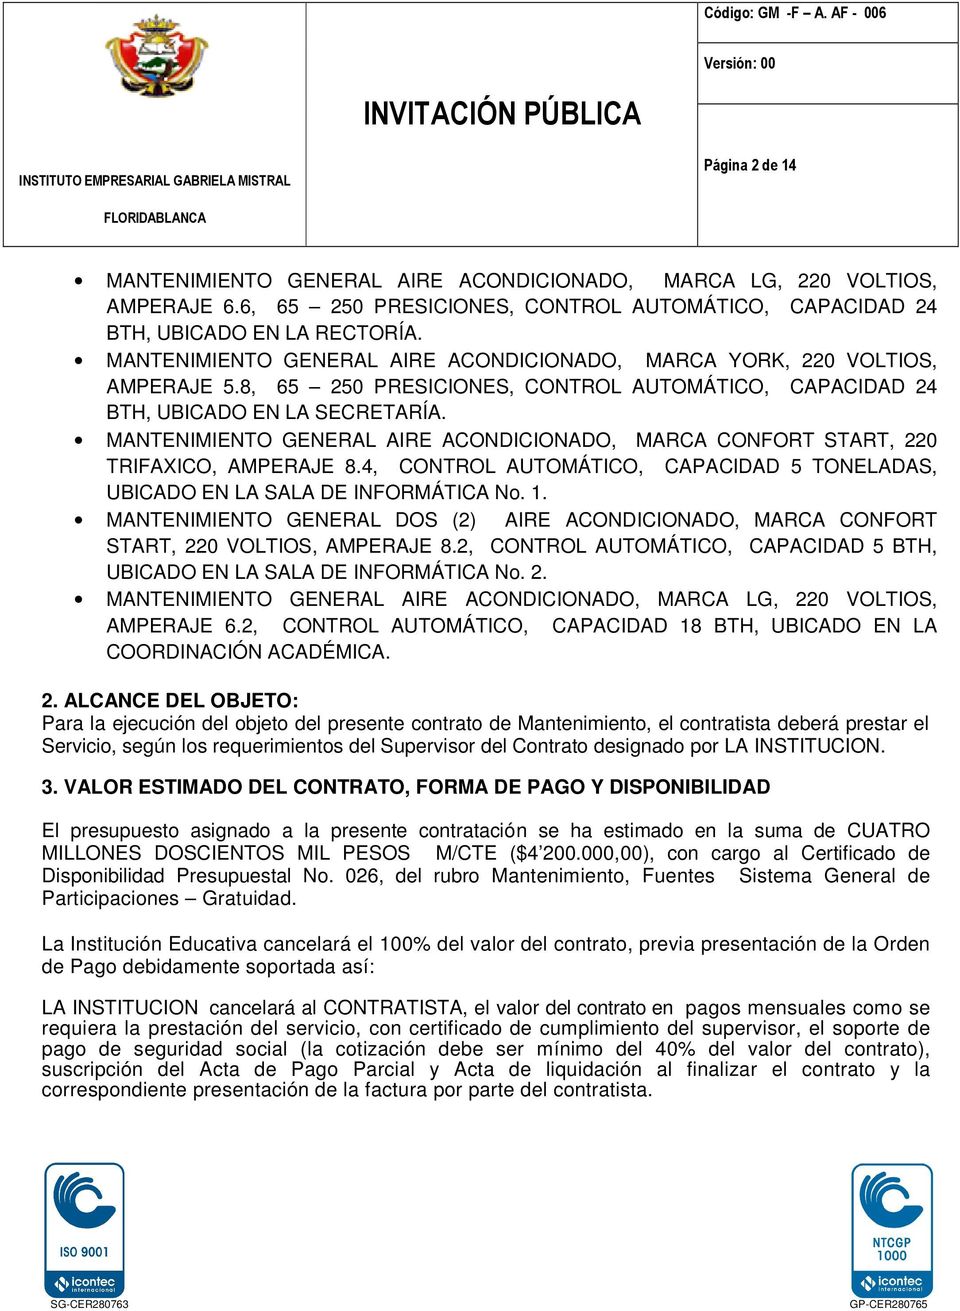 MANTENIMIENTO GENERAL AIRE ACONDICIONADO, MARCA CONFORT START, 220 TRIFAXICO, AMPERAJE 8.4, CONTROL AUTOMÁTICO, CAPACIDAD 5 TONELADAS, UBICADO EN LA SALA DE INFORMÁTICA No. 1.